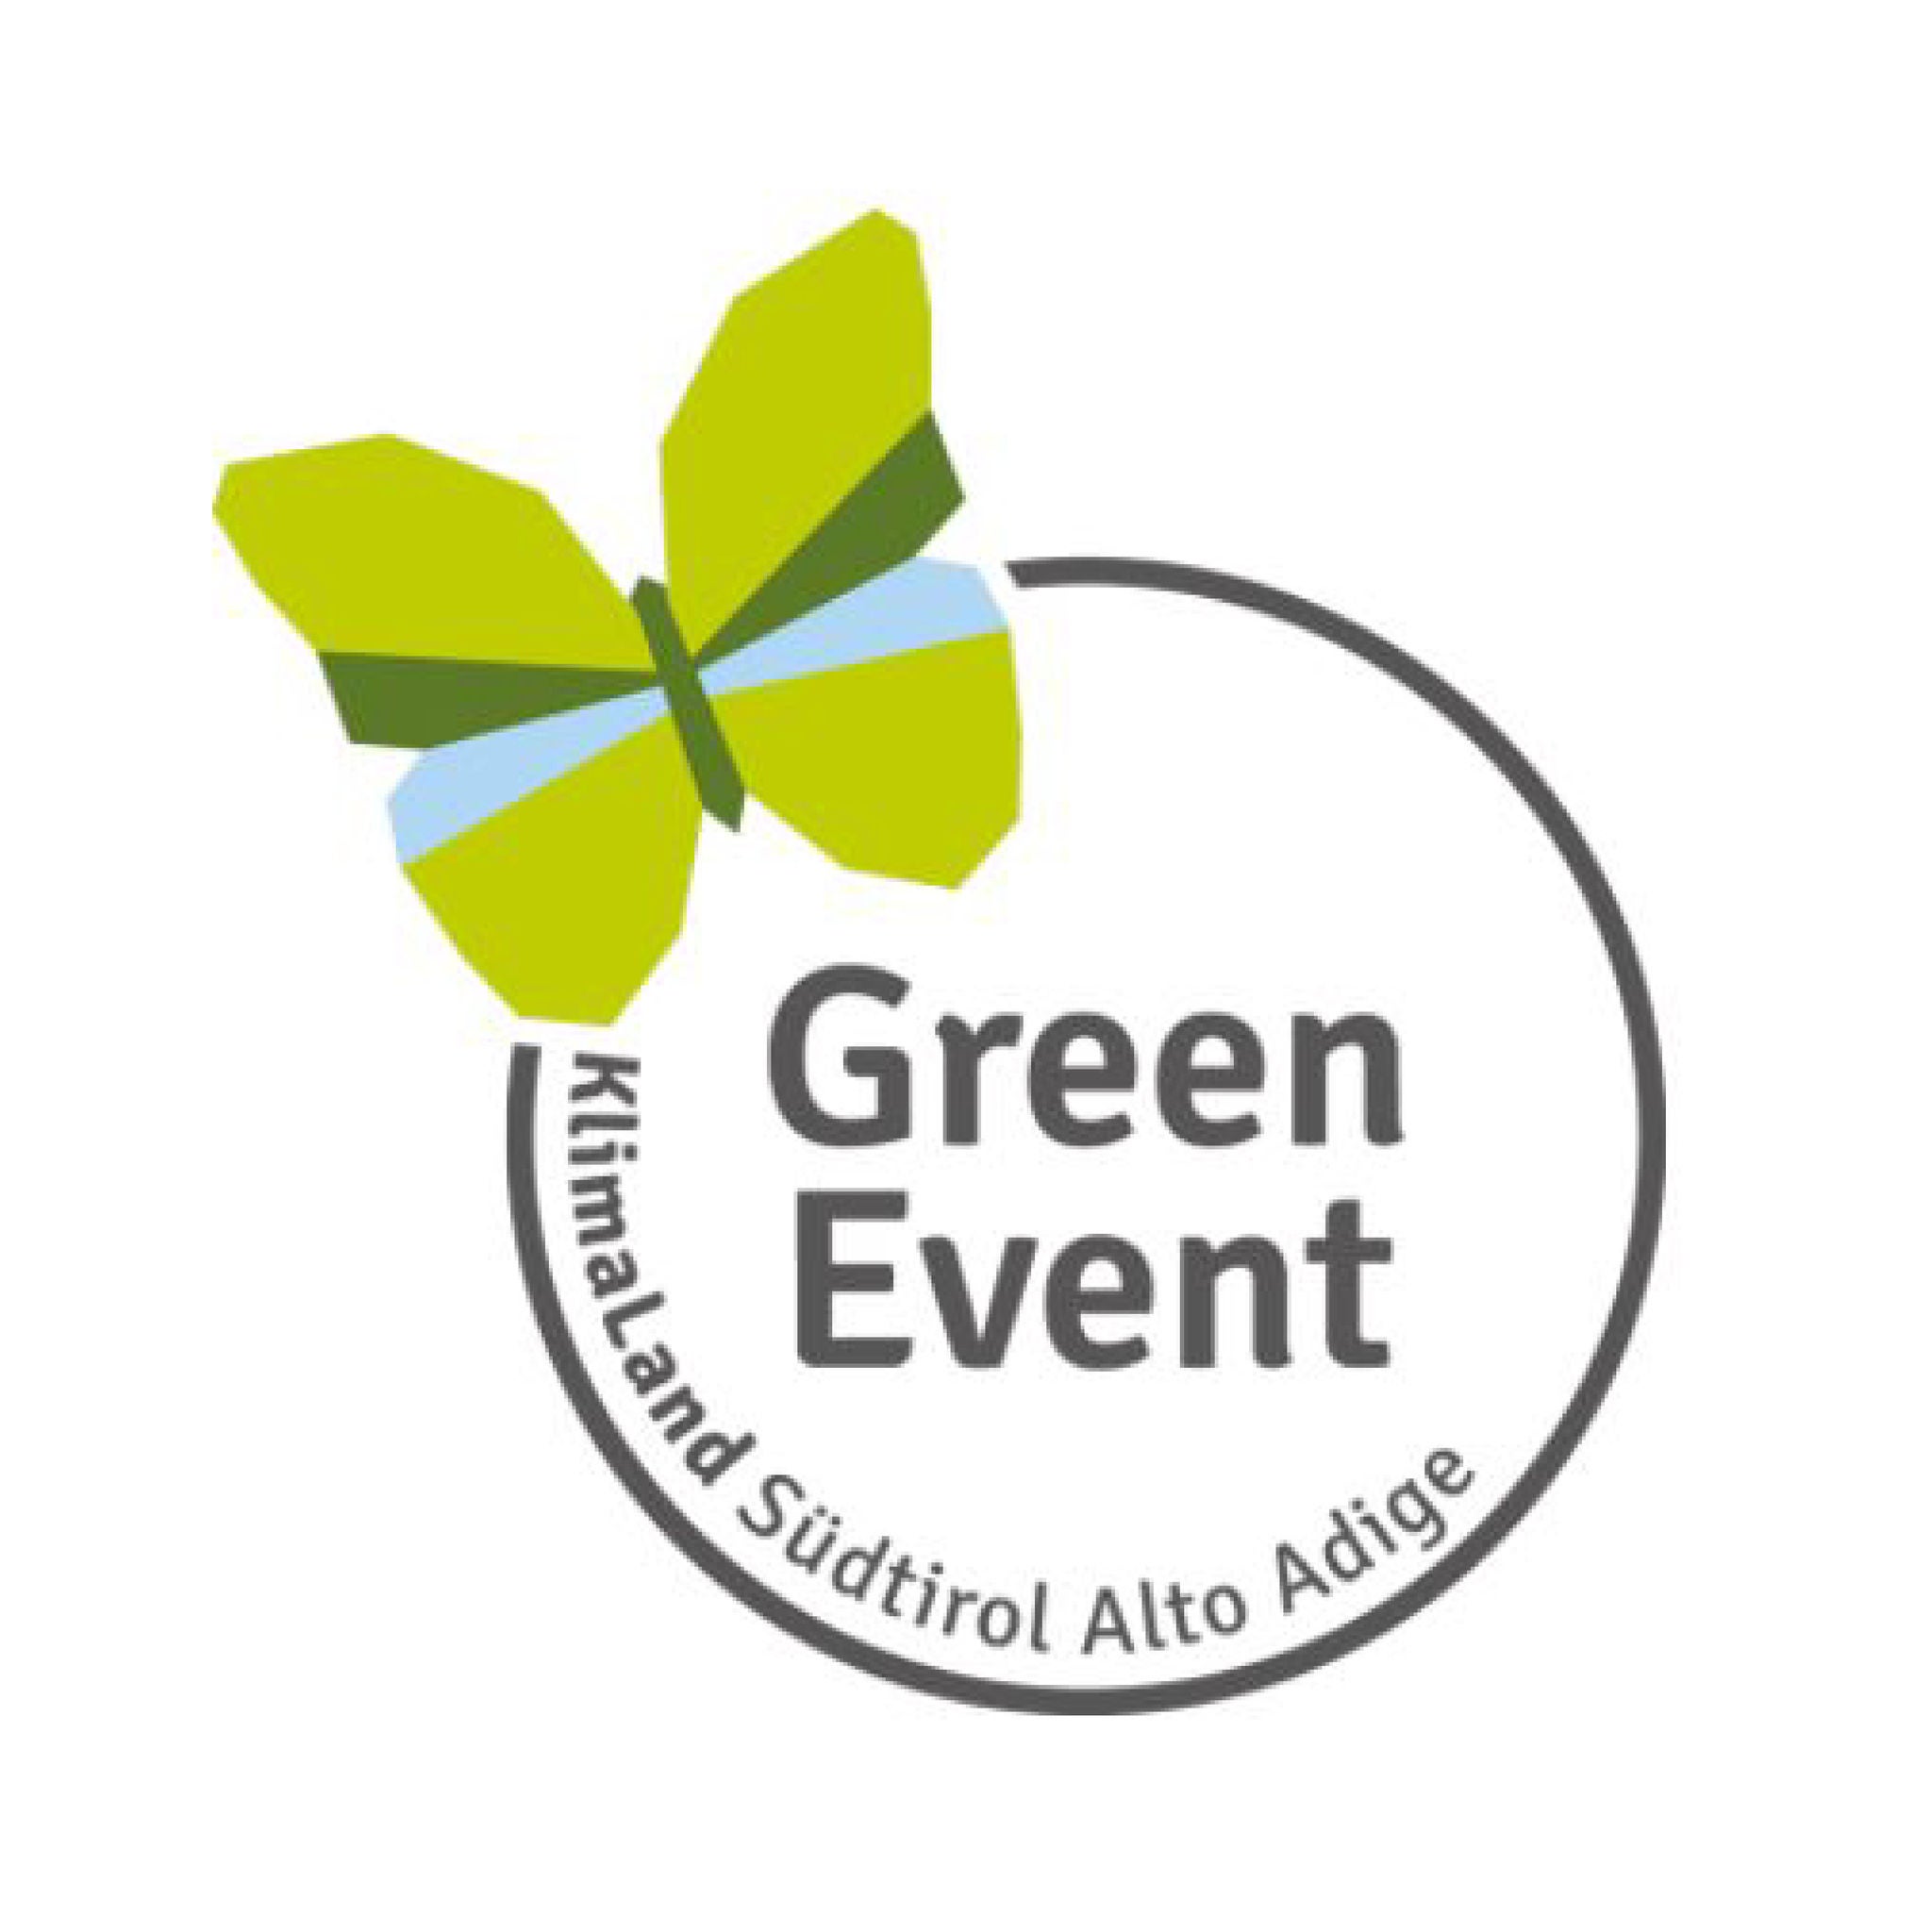 Das Label Green Event für nachhaltige Veranstaltungen in Südtirol zeigt einen illustrierten Schmetterling mit grün-blauen Flügeln.